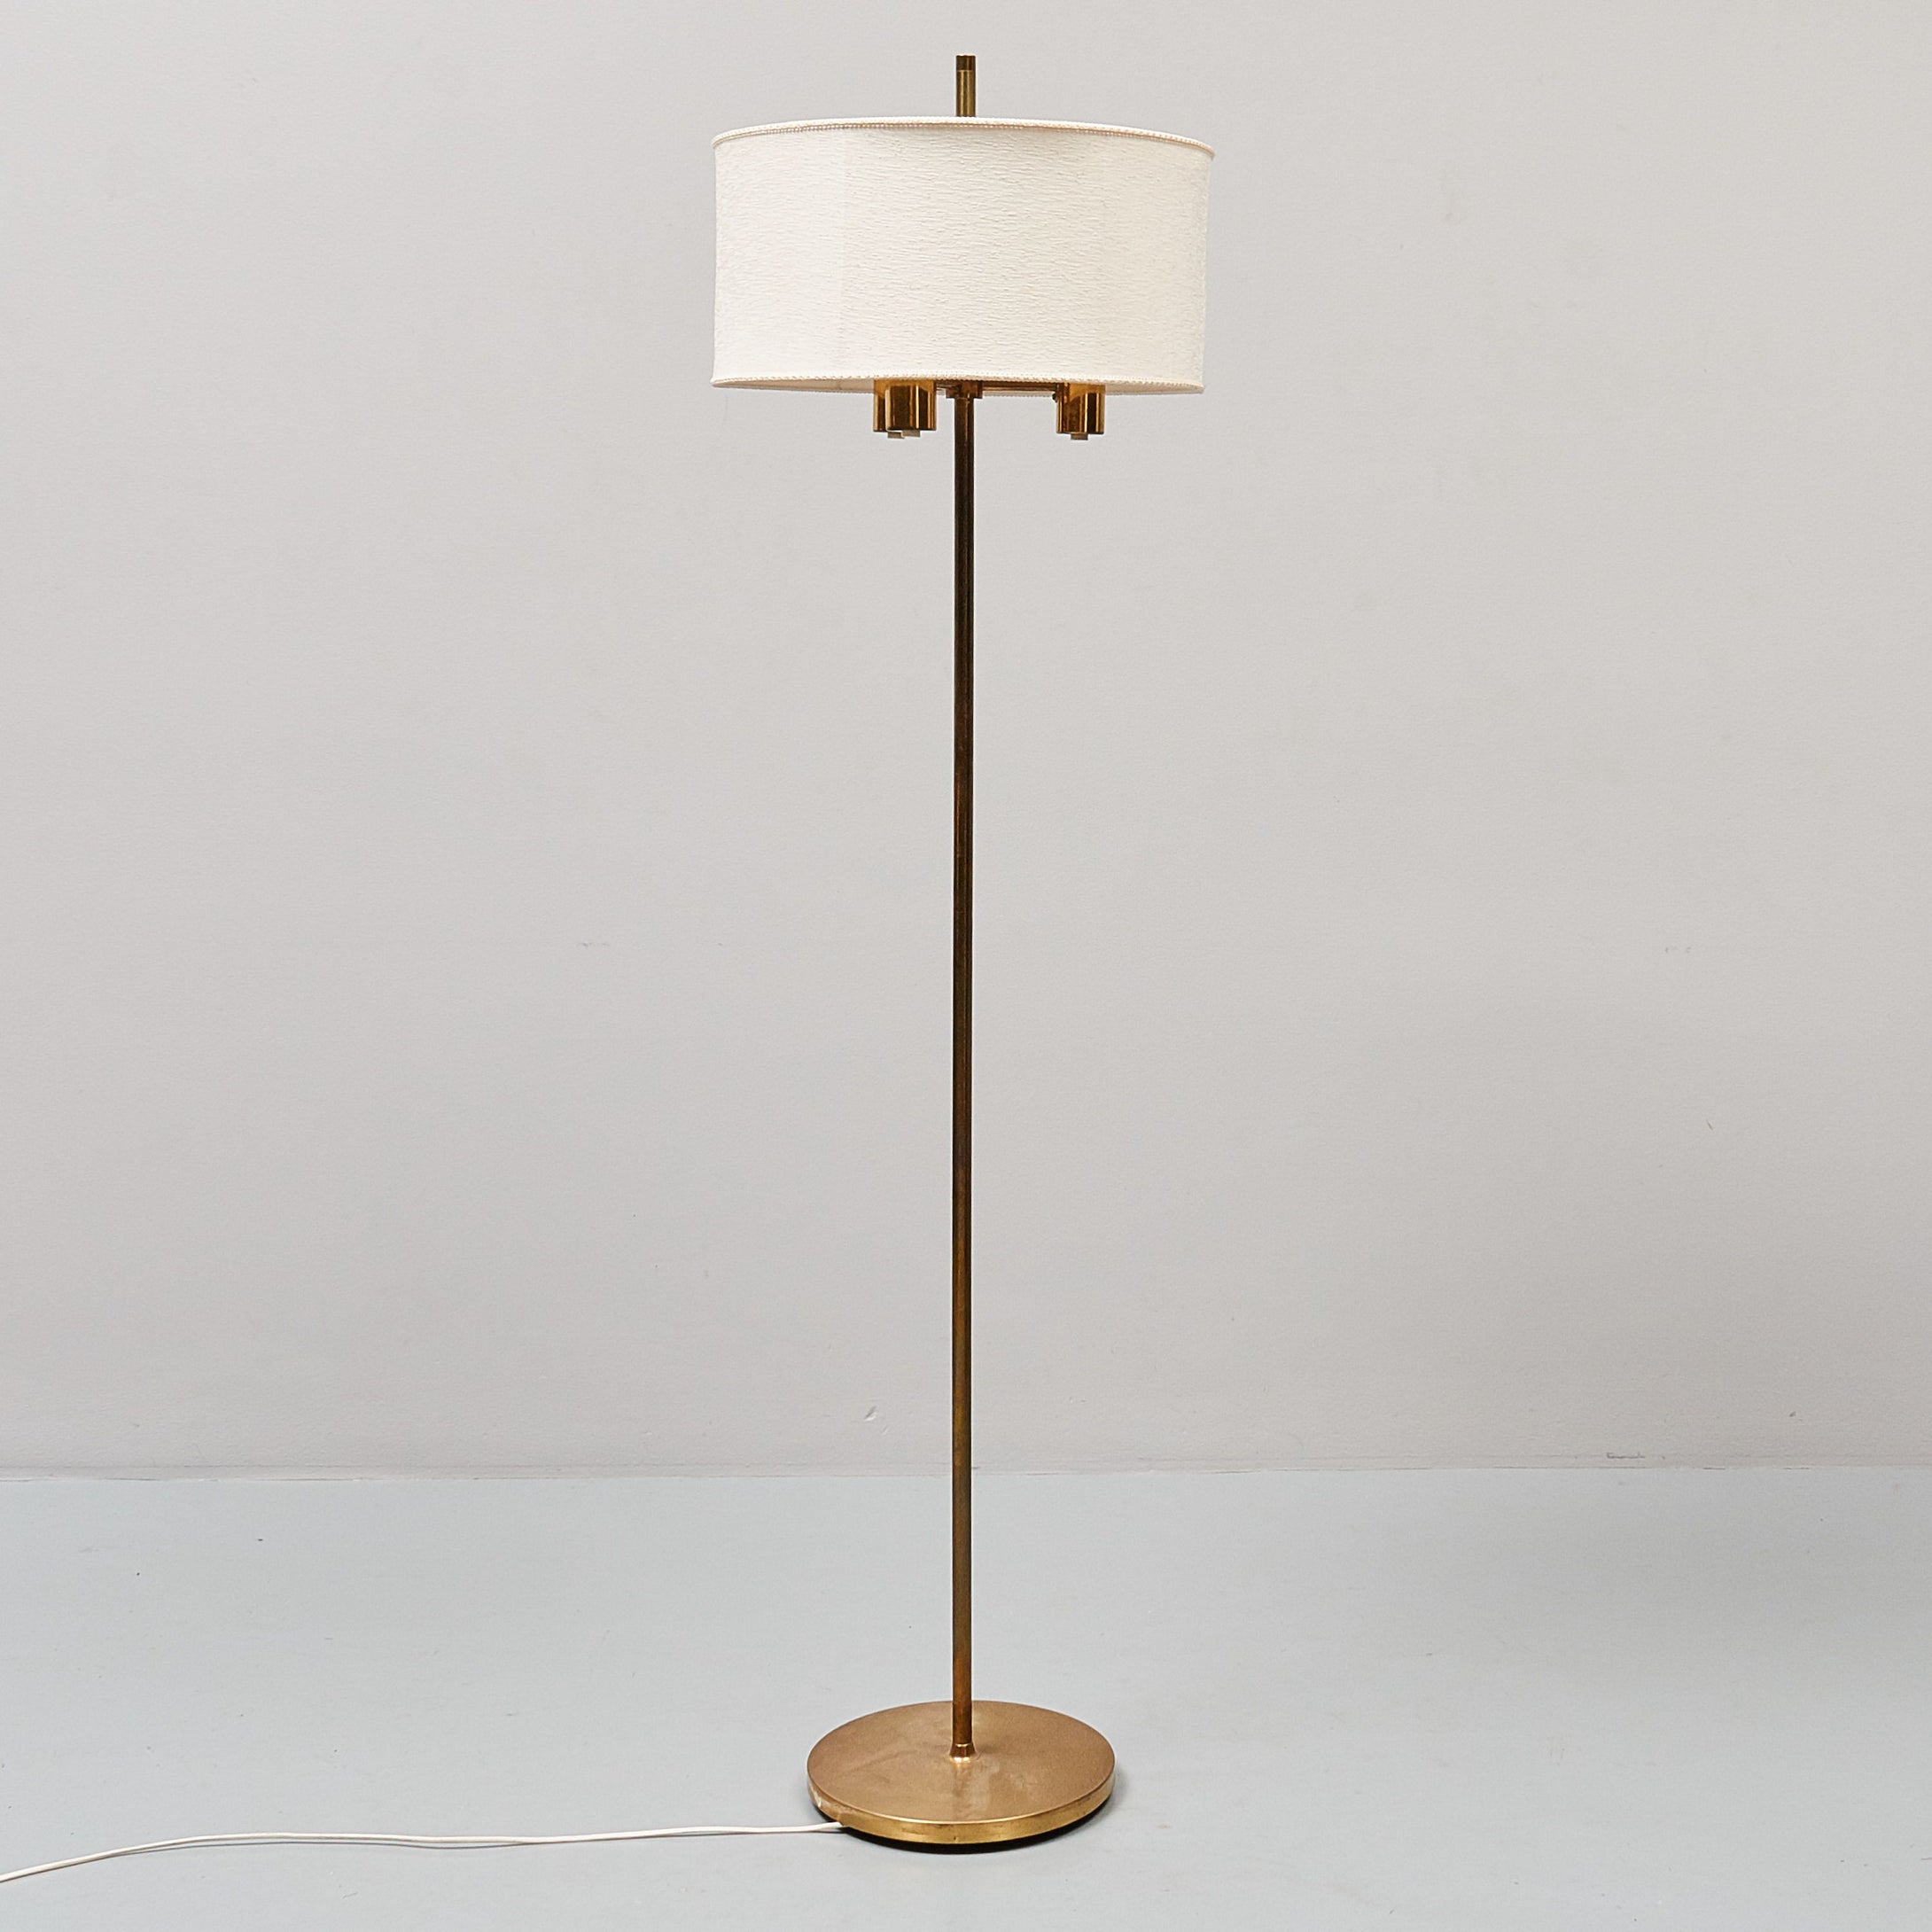 Golvlampa i mässing märkt FAB, 1960-tal. 165cm hög Brass floor lamp marked FAB, 1960's. H: 165cm/65